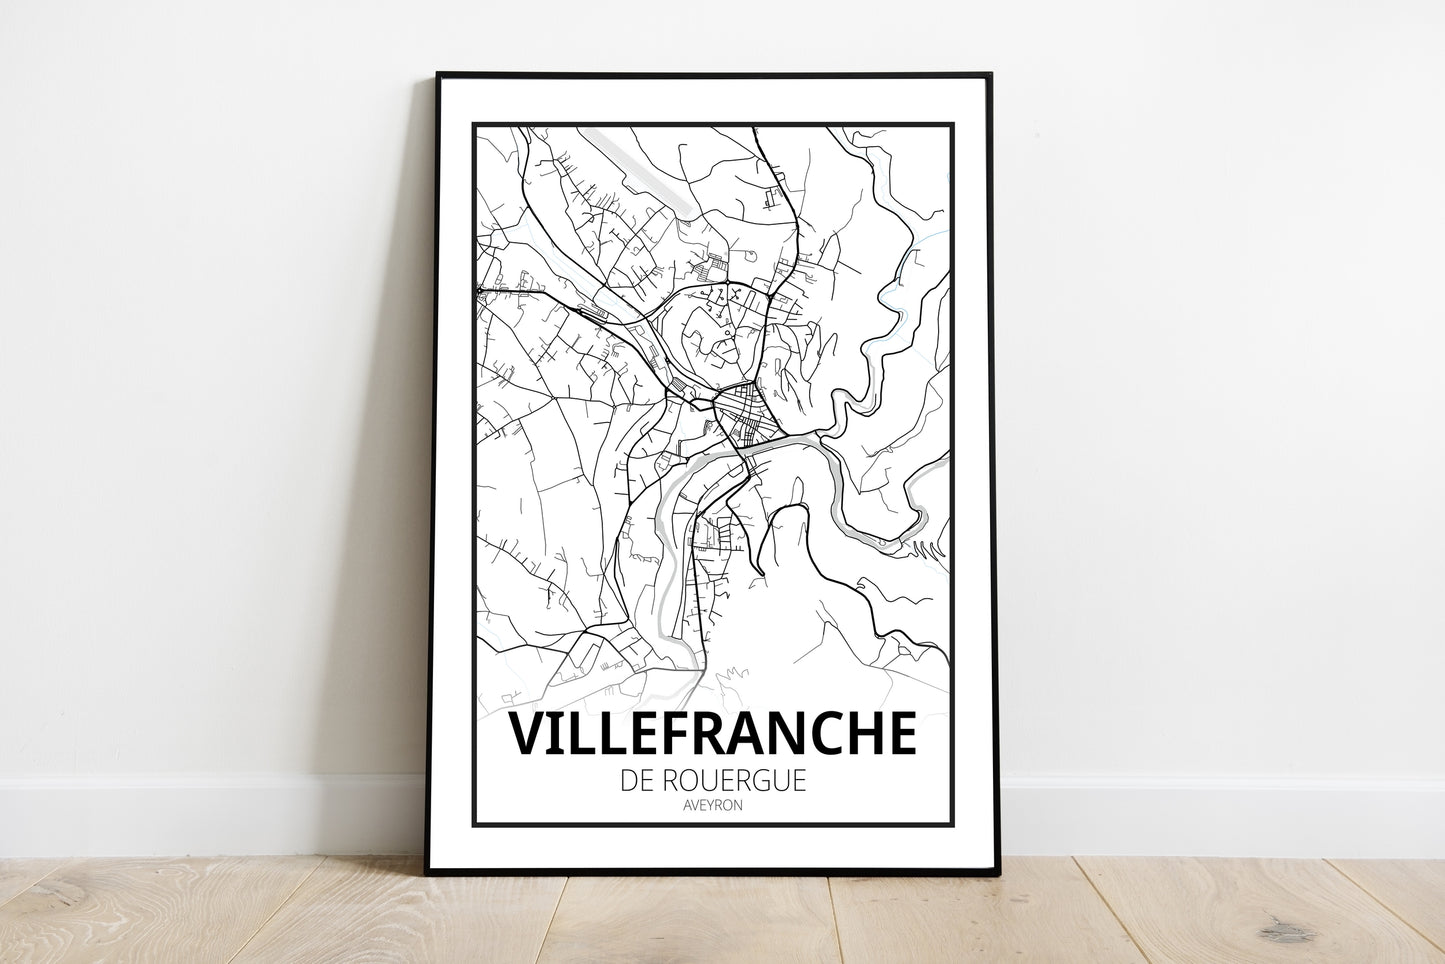 Villefranche-de-Rouergue - Aveyron